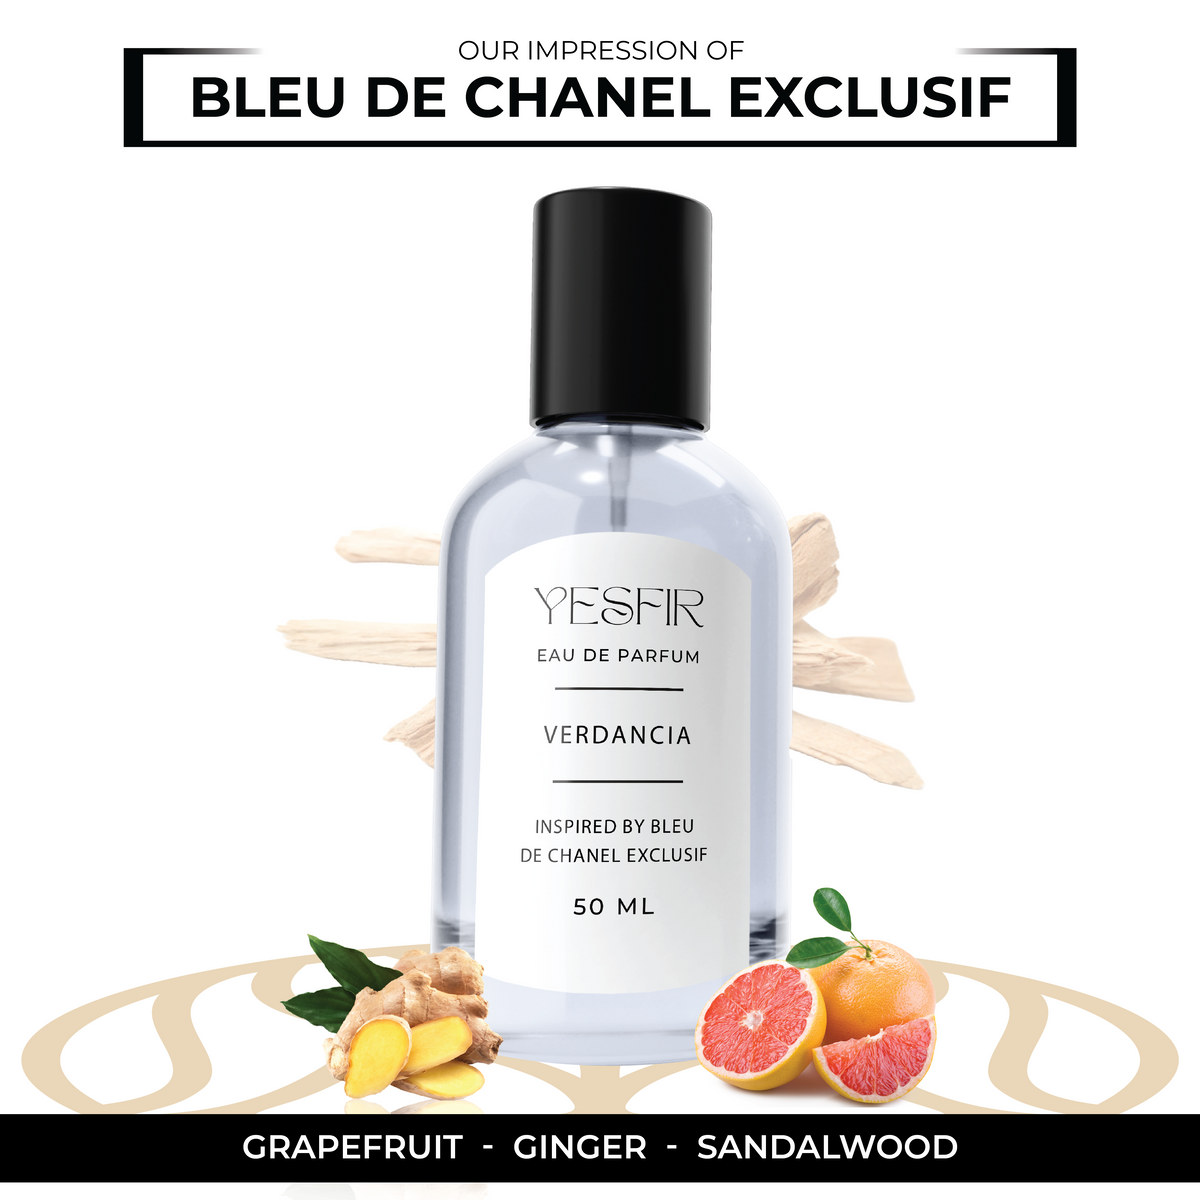 Verdancia - Inspired by Bleu De Chanel Exclusif